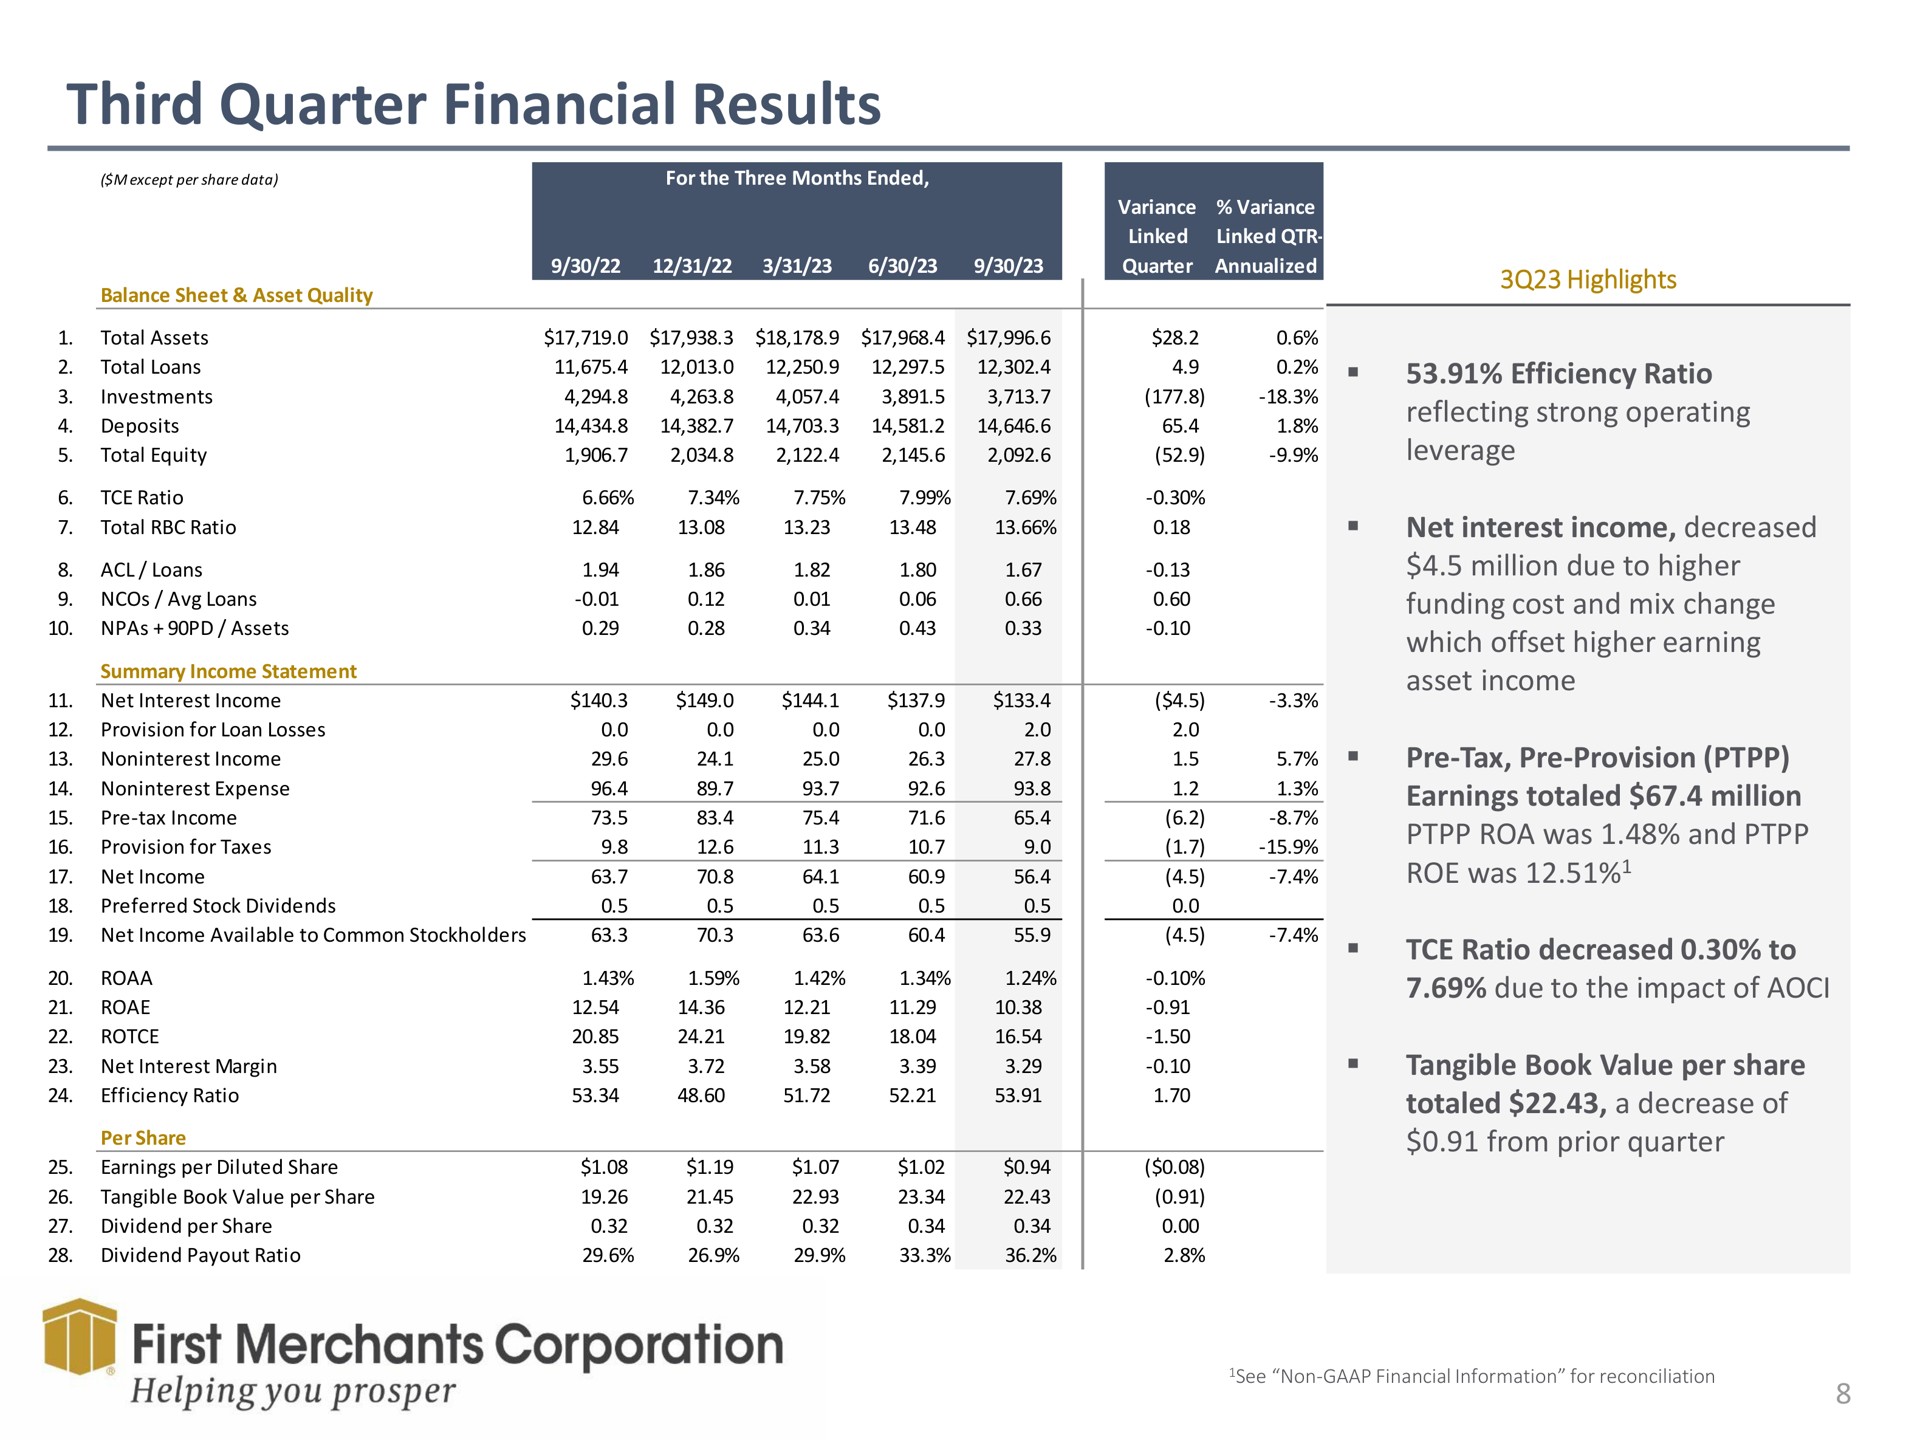 third quarter financial results first merchants corporation helping you prosper | First Merchants